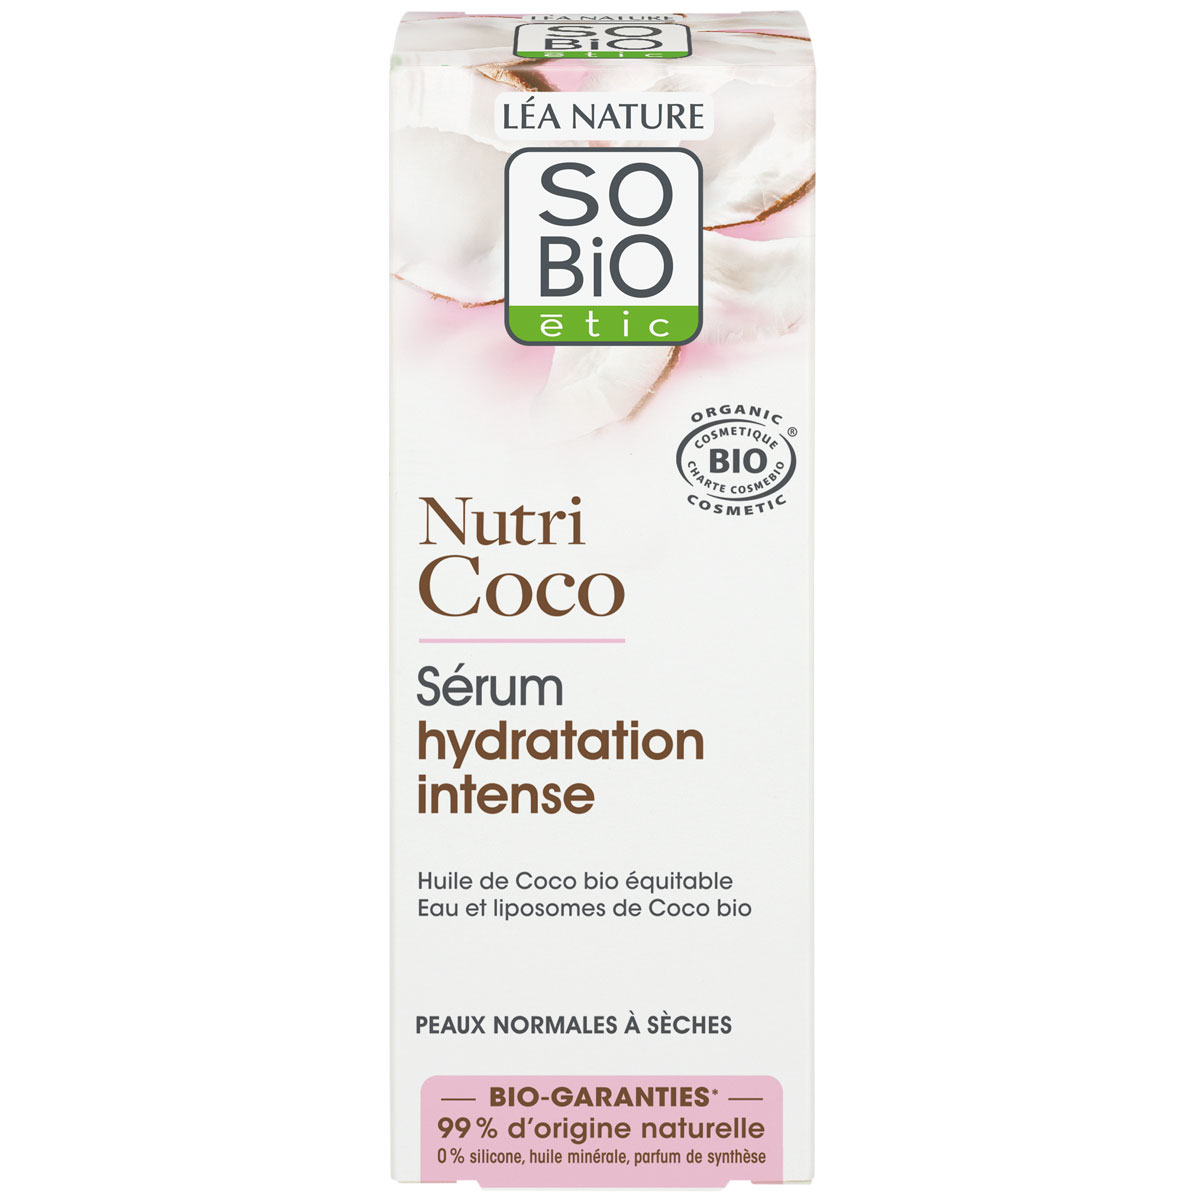 Sérum hydratation intense - Nutri Coco - Peaux normales à sèches - 30 ml